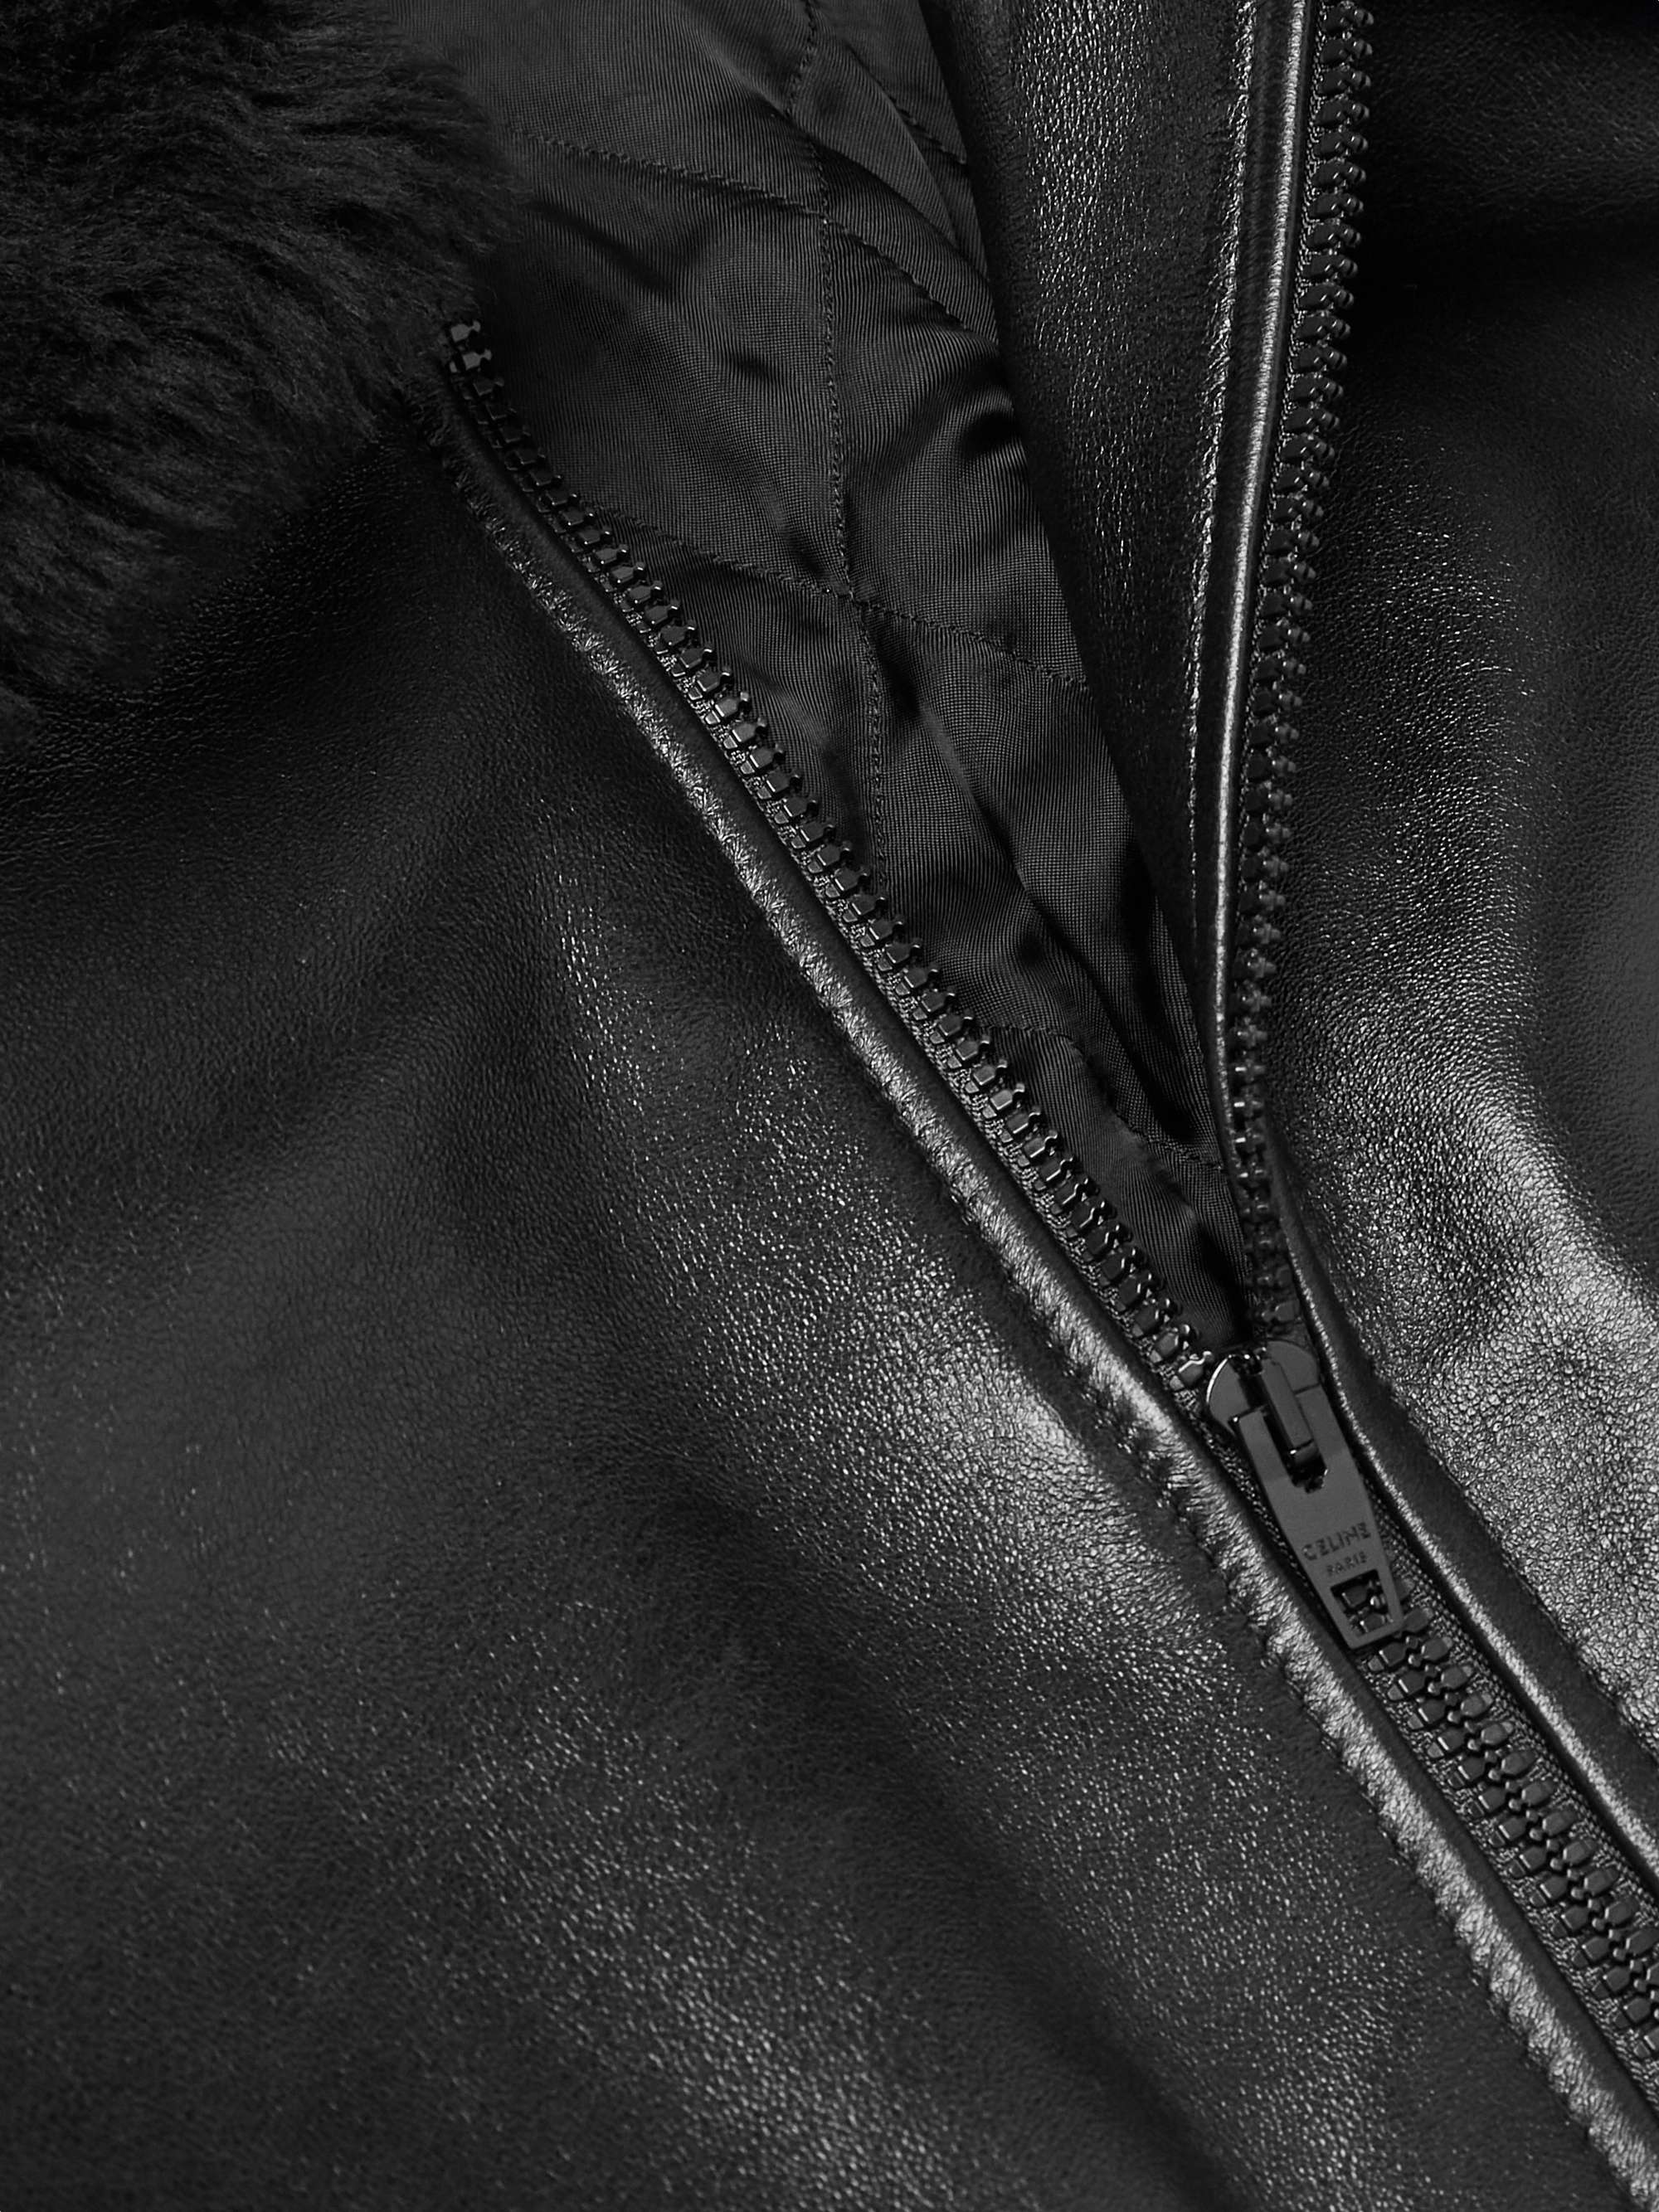 CELINE HOMME Shearling-Lined Leather Jacket for Men | MR PORTER